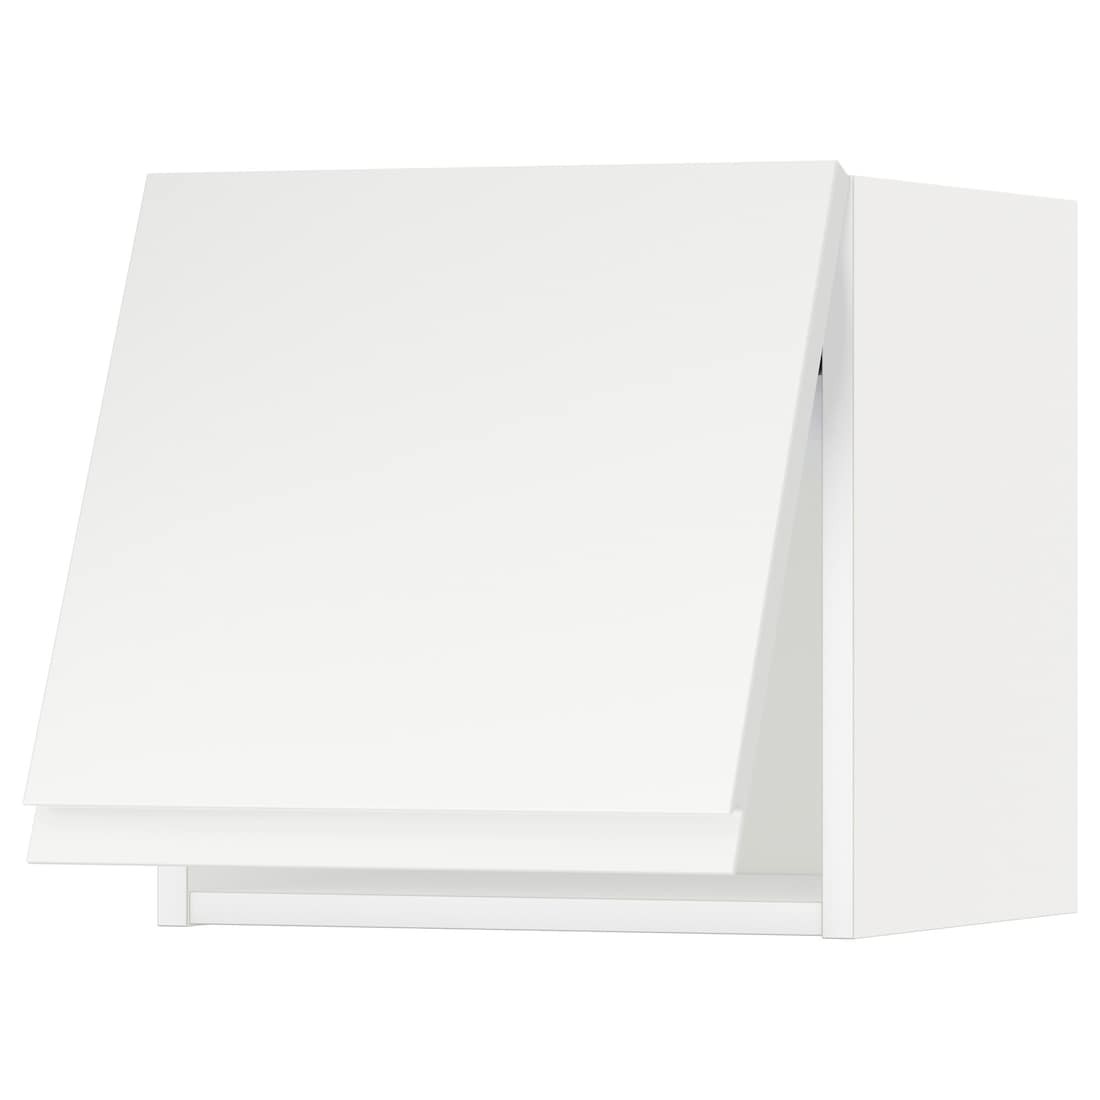 METOD МЕТОД Навесной горизонтальный шкаф, белый / Voxtorp матовый белый, 40x40 см